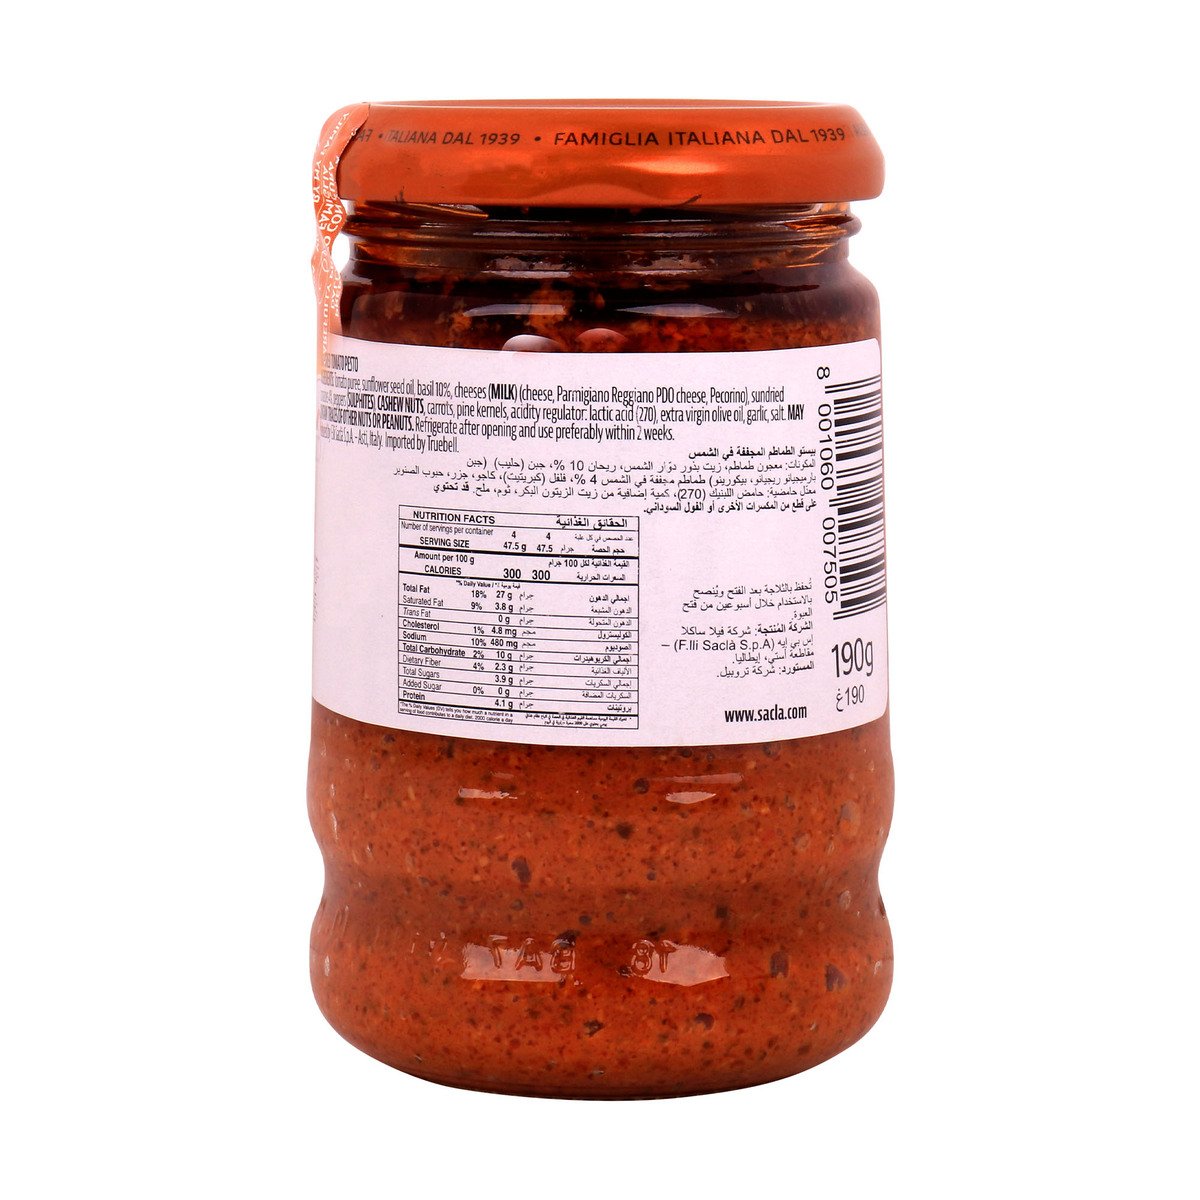 Sacla Basil & Tomato Sauce 190 g